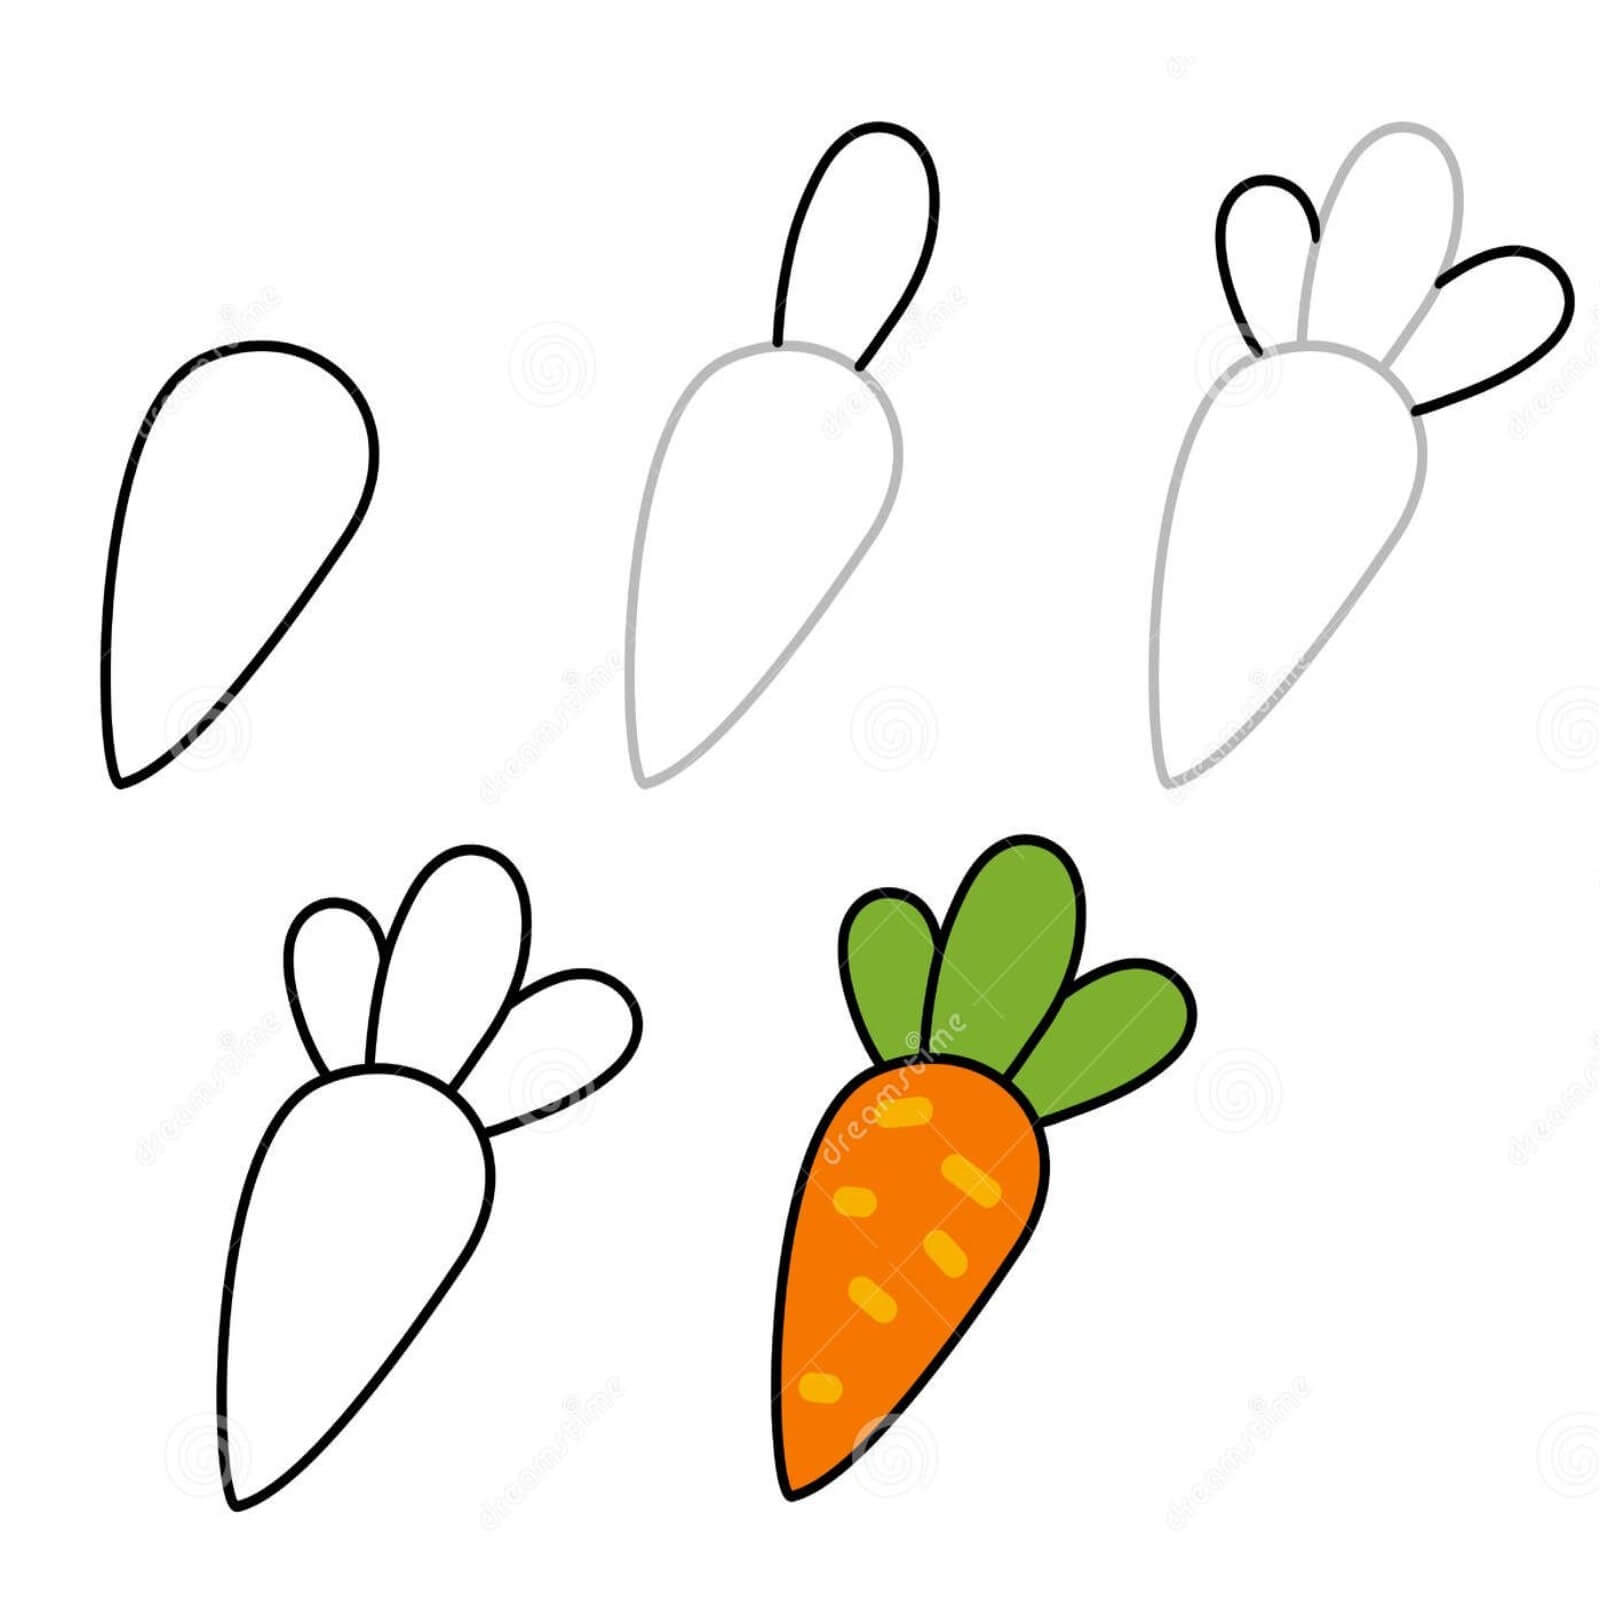 Idée de carotte 16 dessin